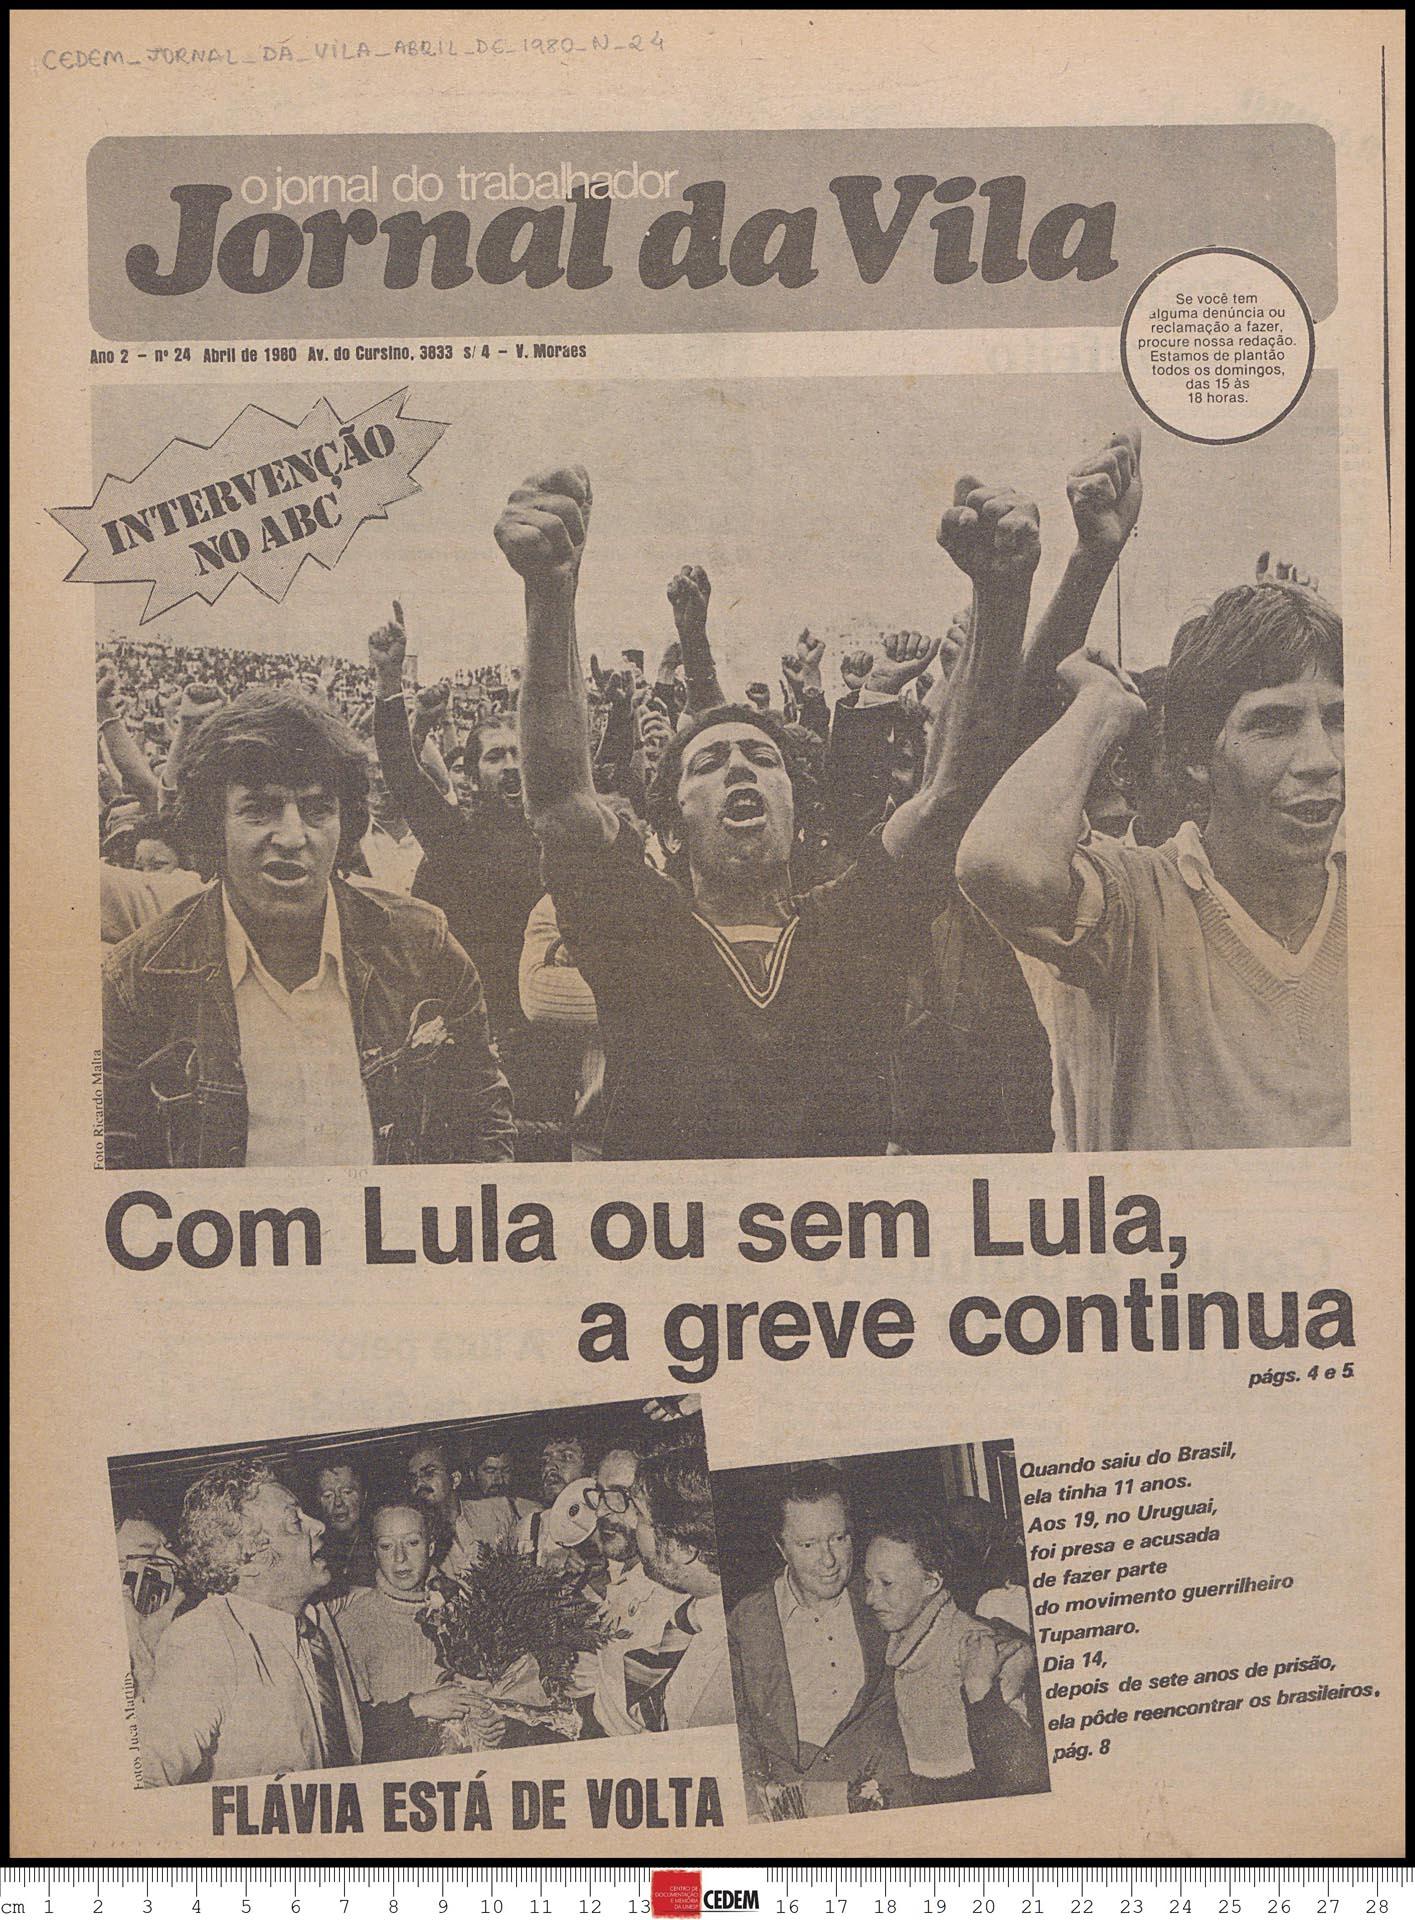 Capa do Jornal da Vila, n.24 - abr. 1980